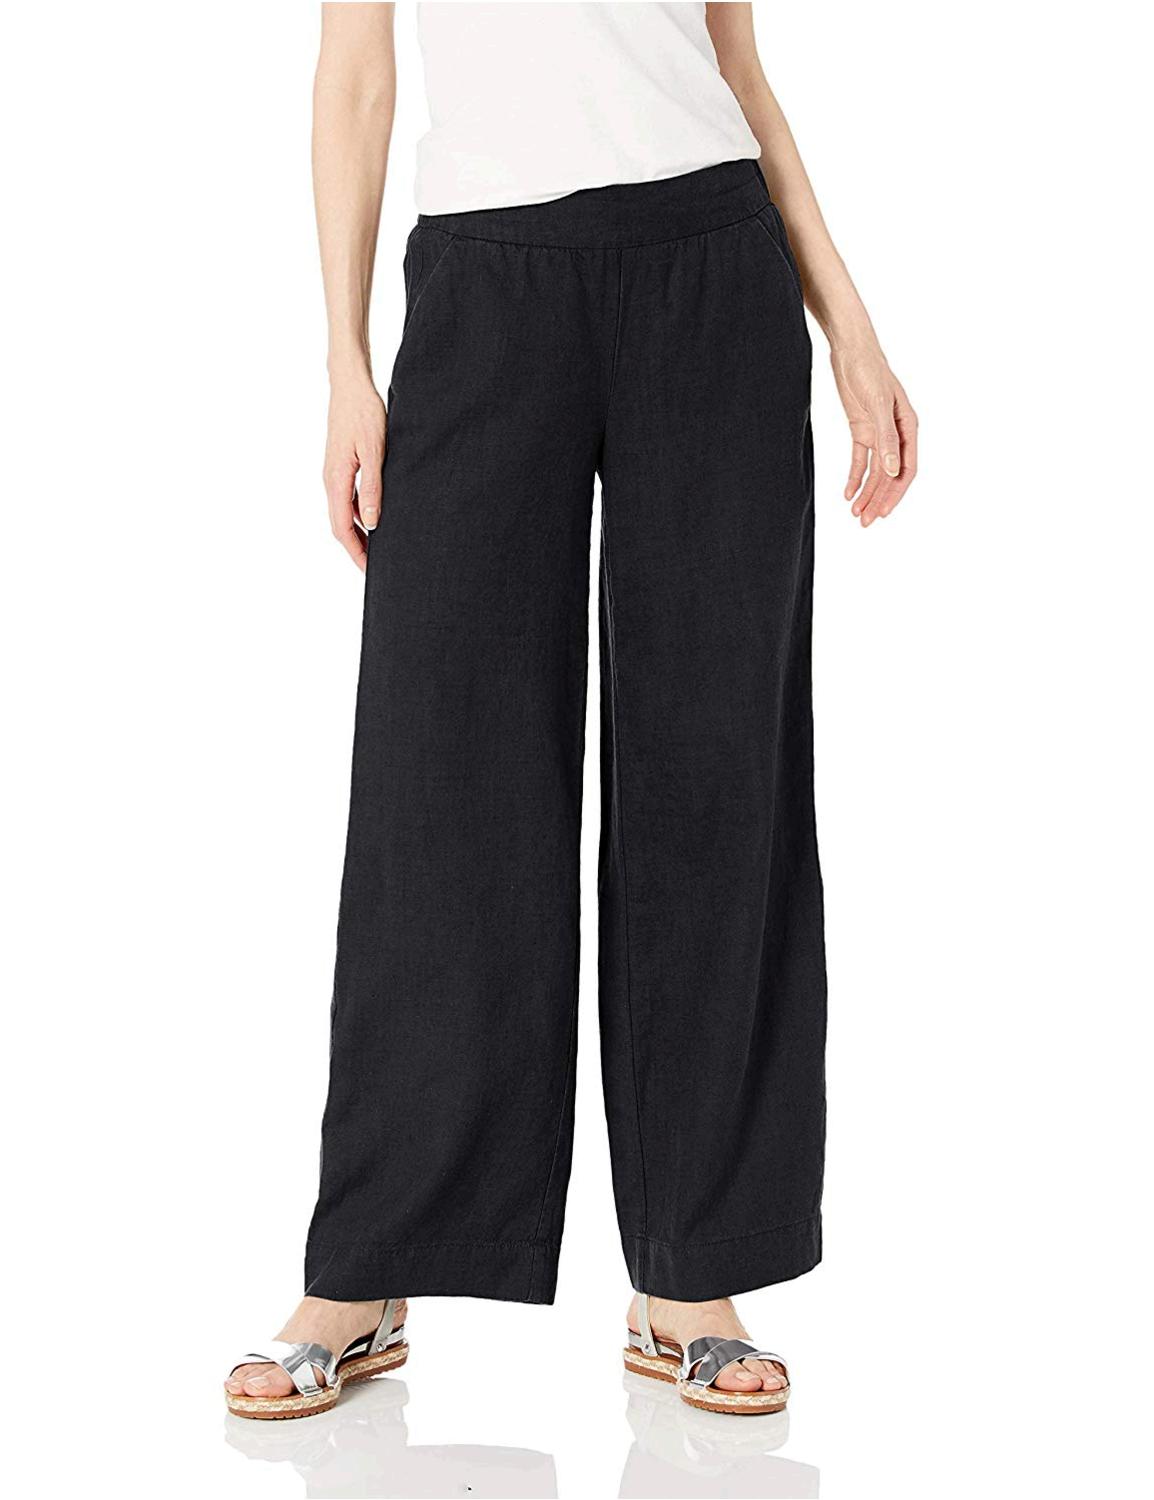 Brand - Daily Ritual Women's Linen Wide-Leg Pant,, Black, Size 14.0 | eBay